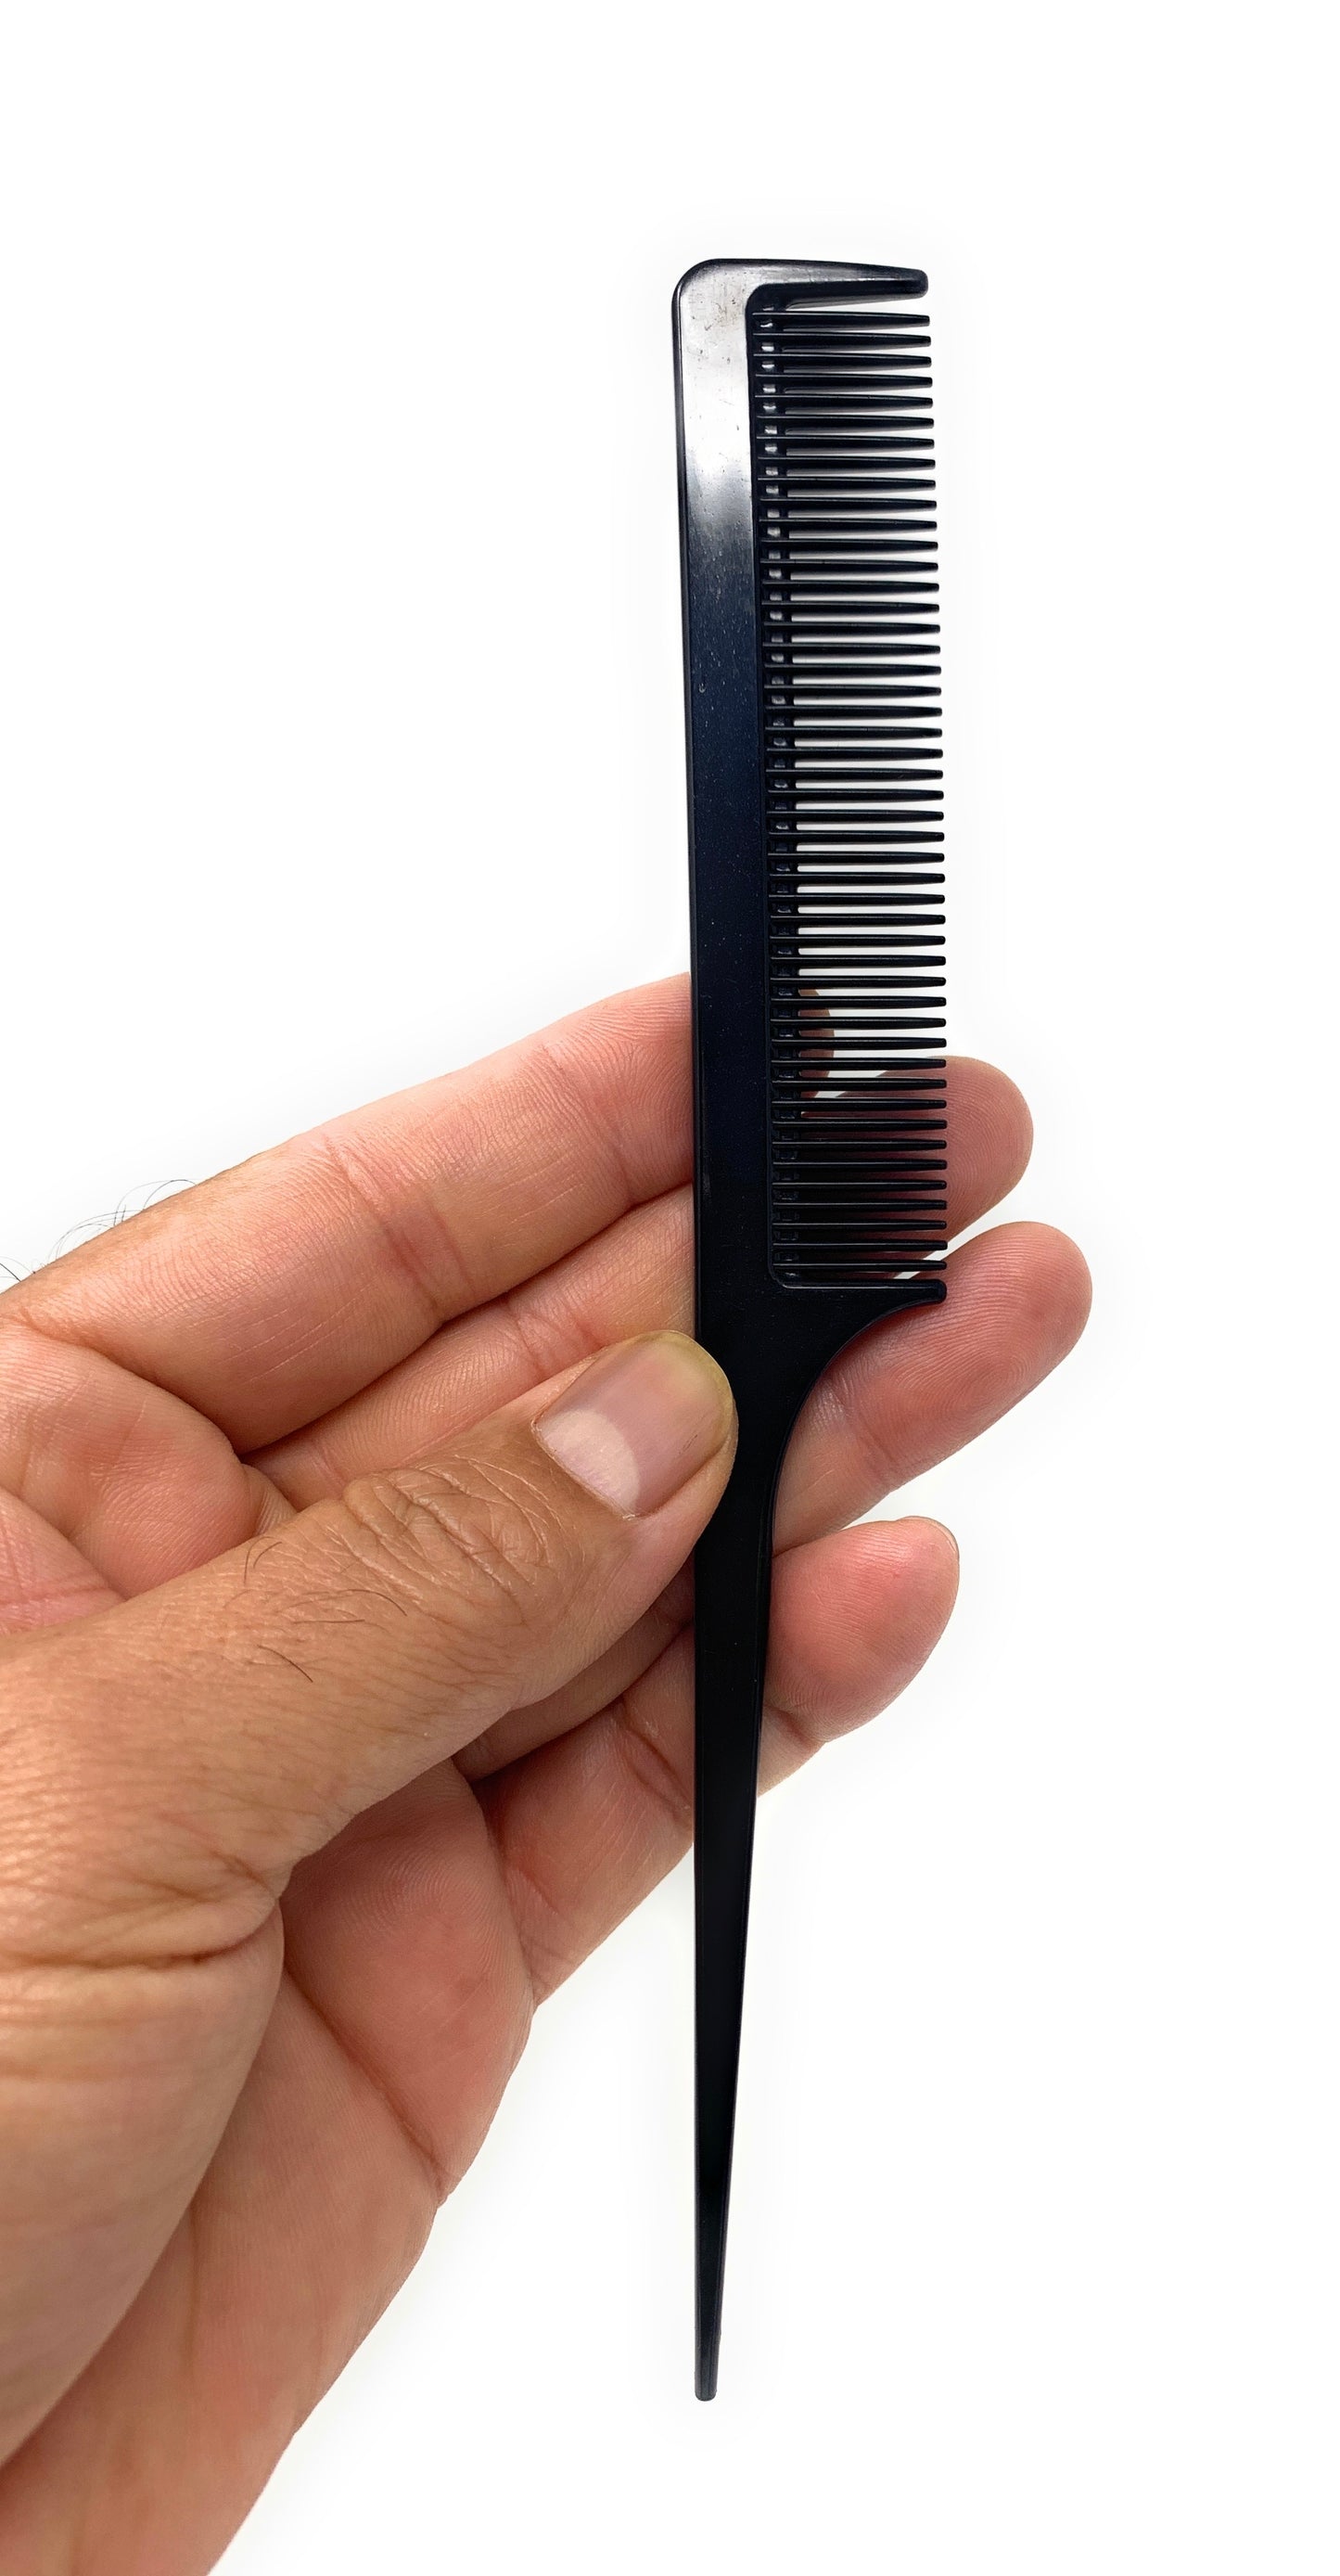 Scalpmaster Barber Combs Set Carbon Comb Set Cutting Combs Set 6 pk.